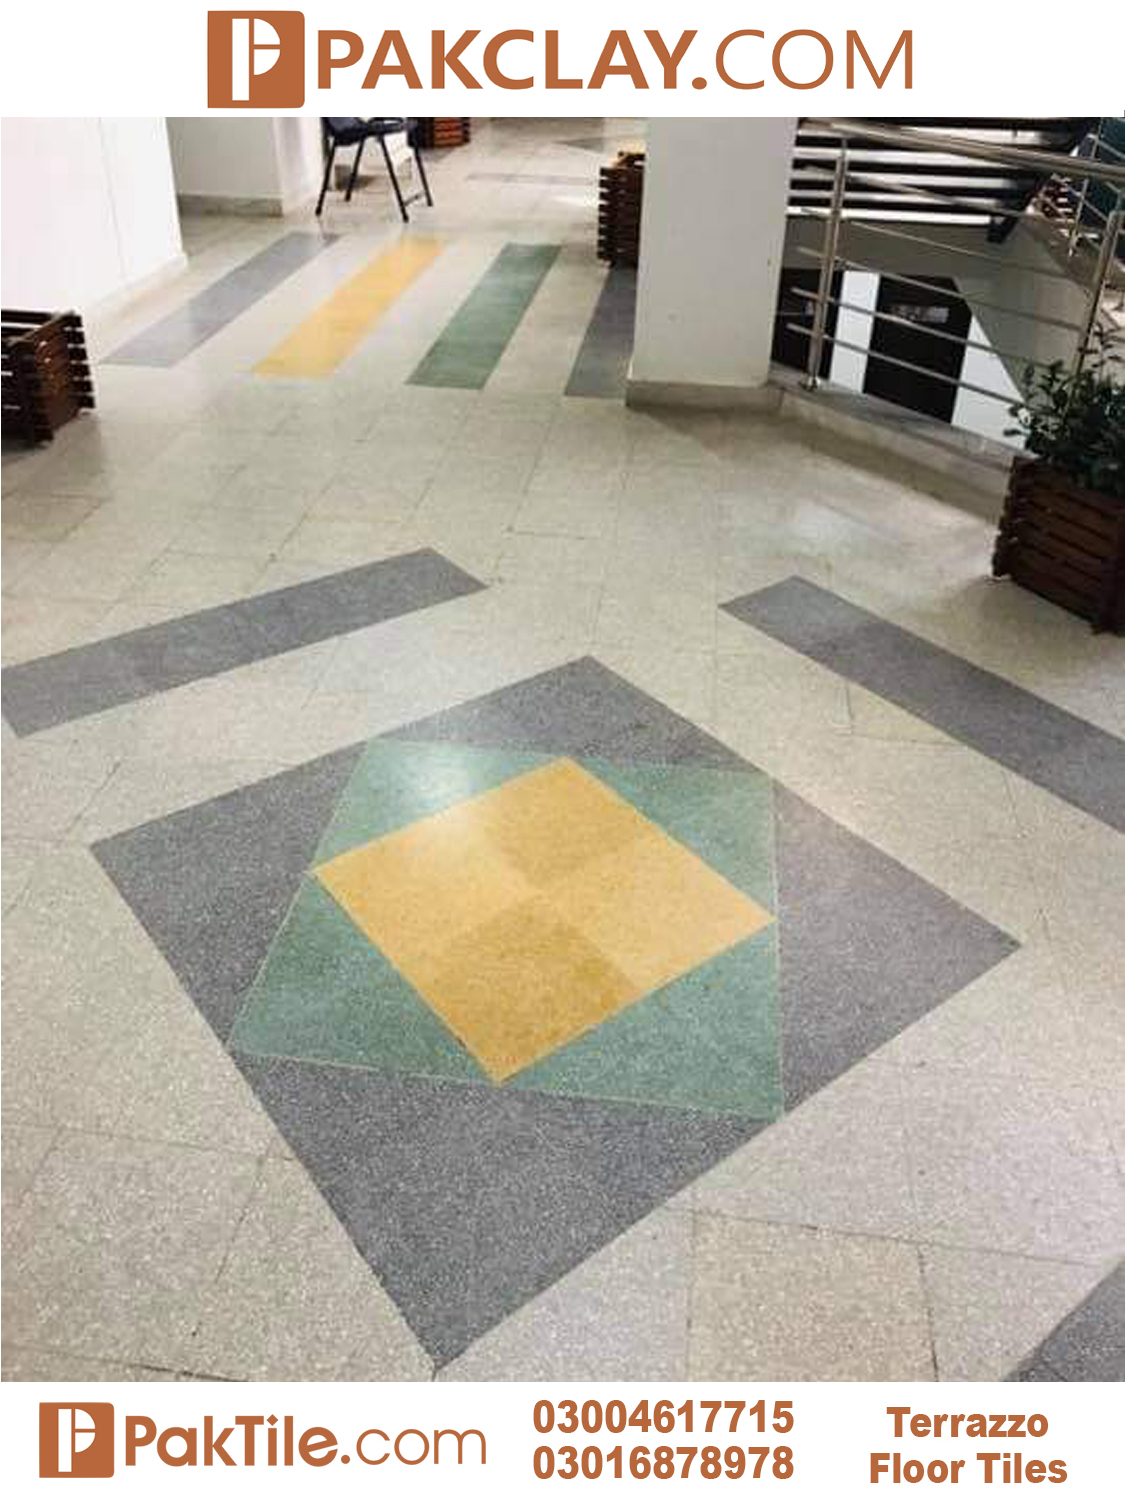 04 terrazzo tiles price in Rawalpindi